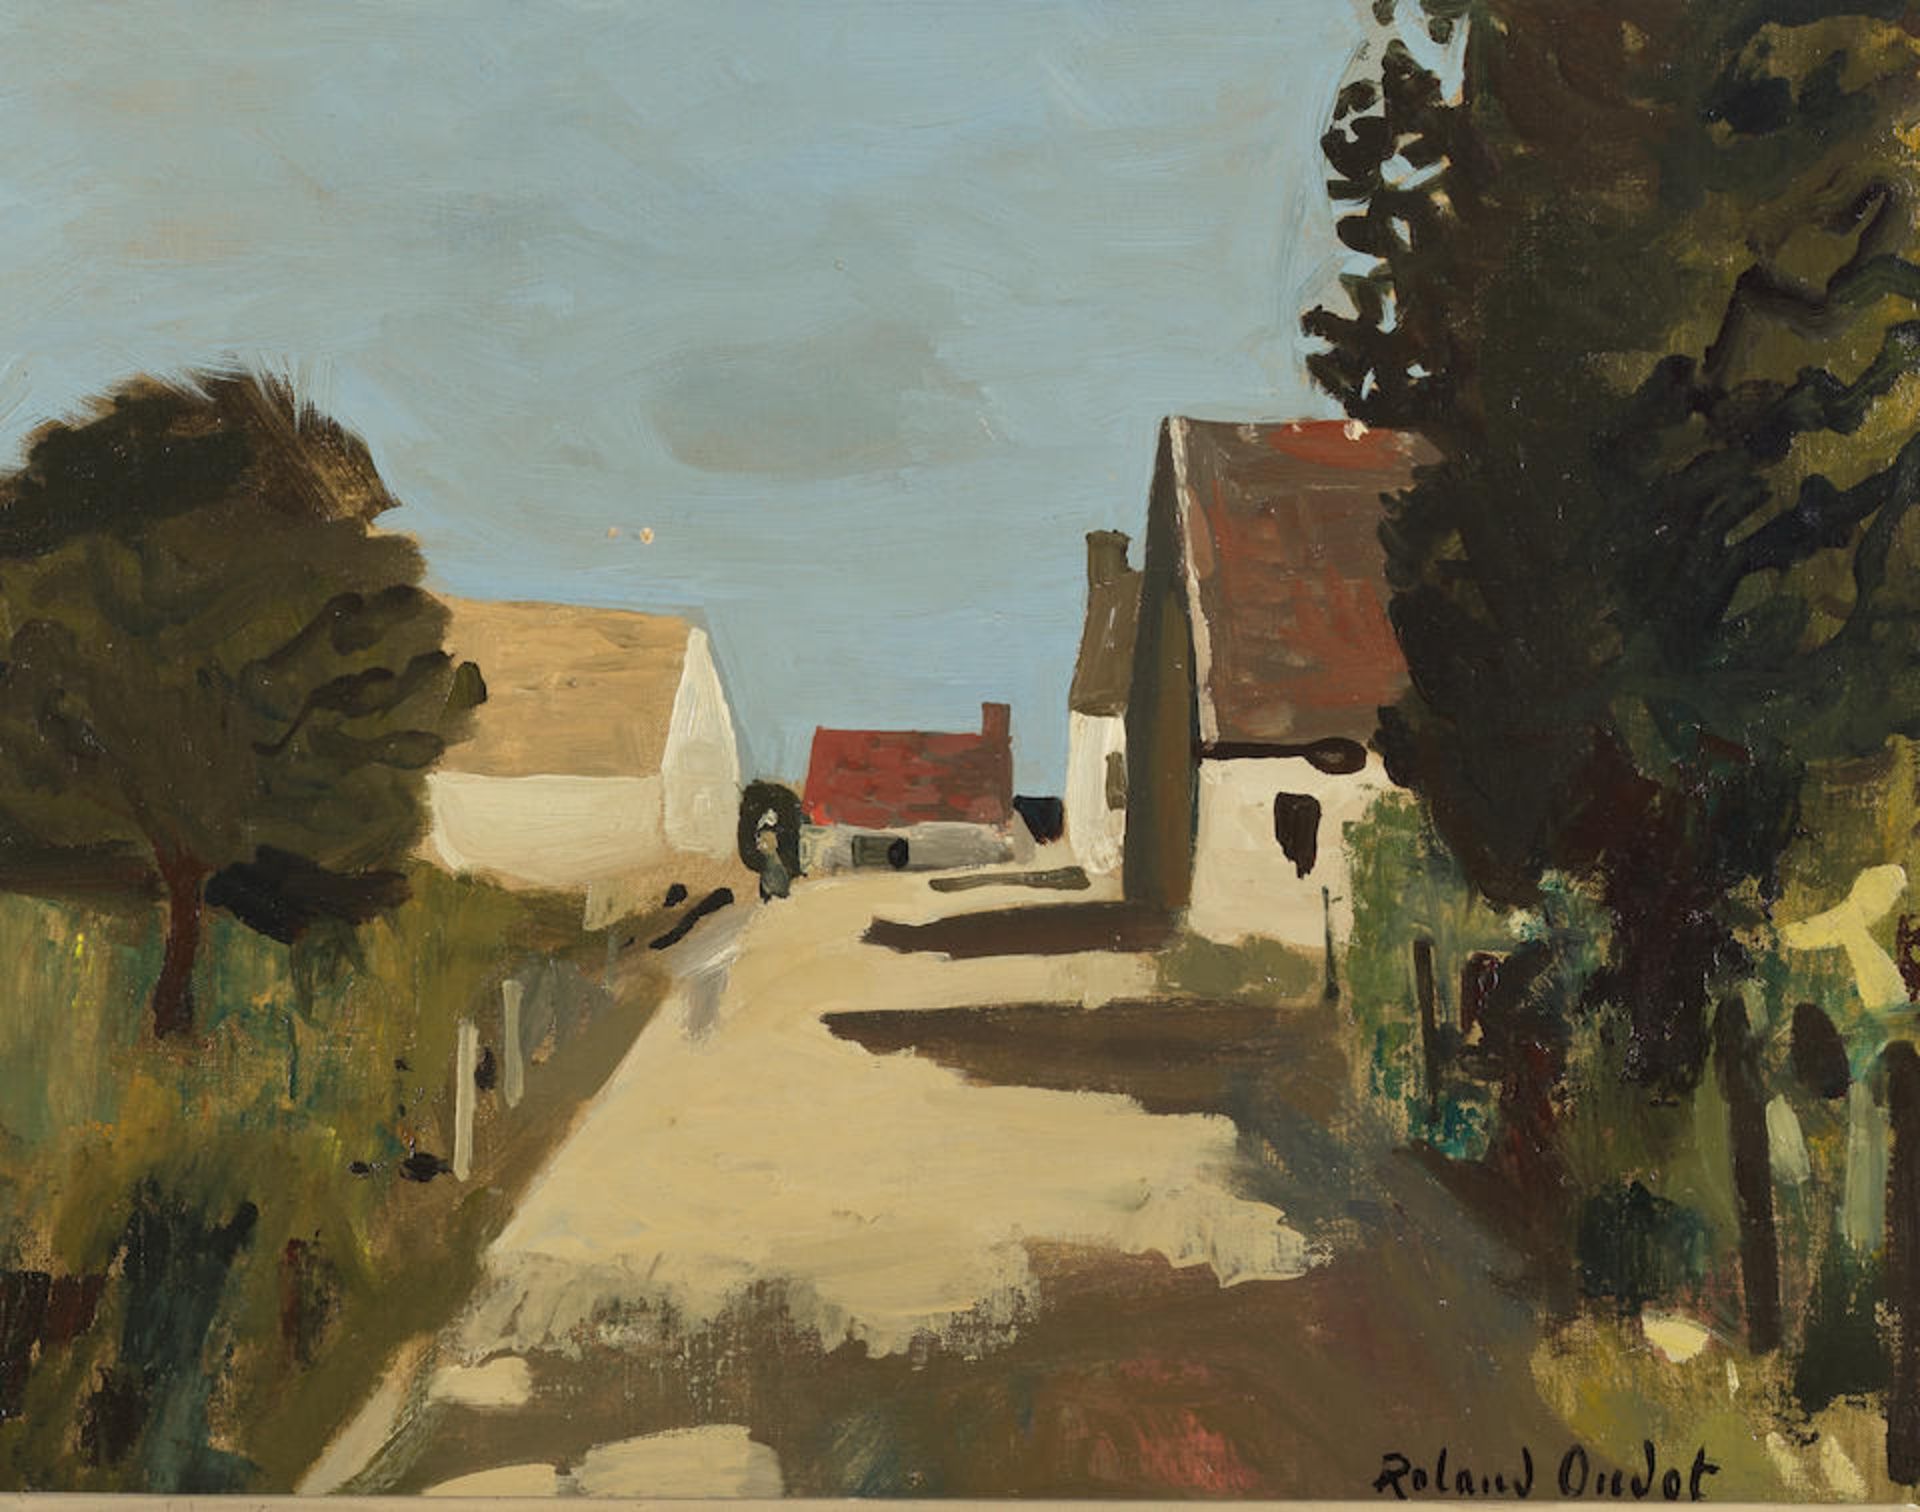 ROLAND OUDOT (1897-1981) Rue de village